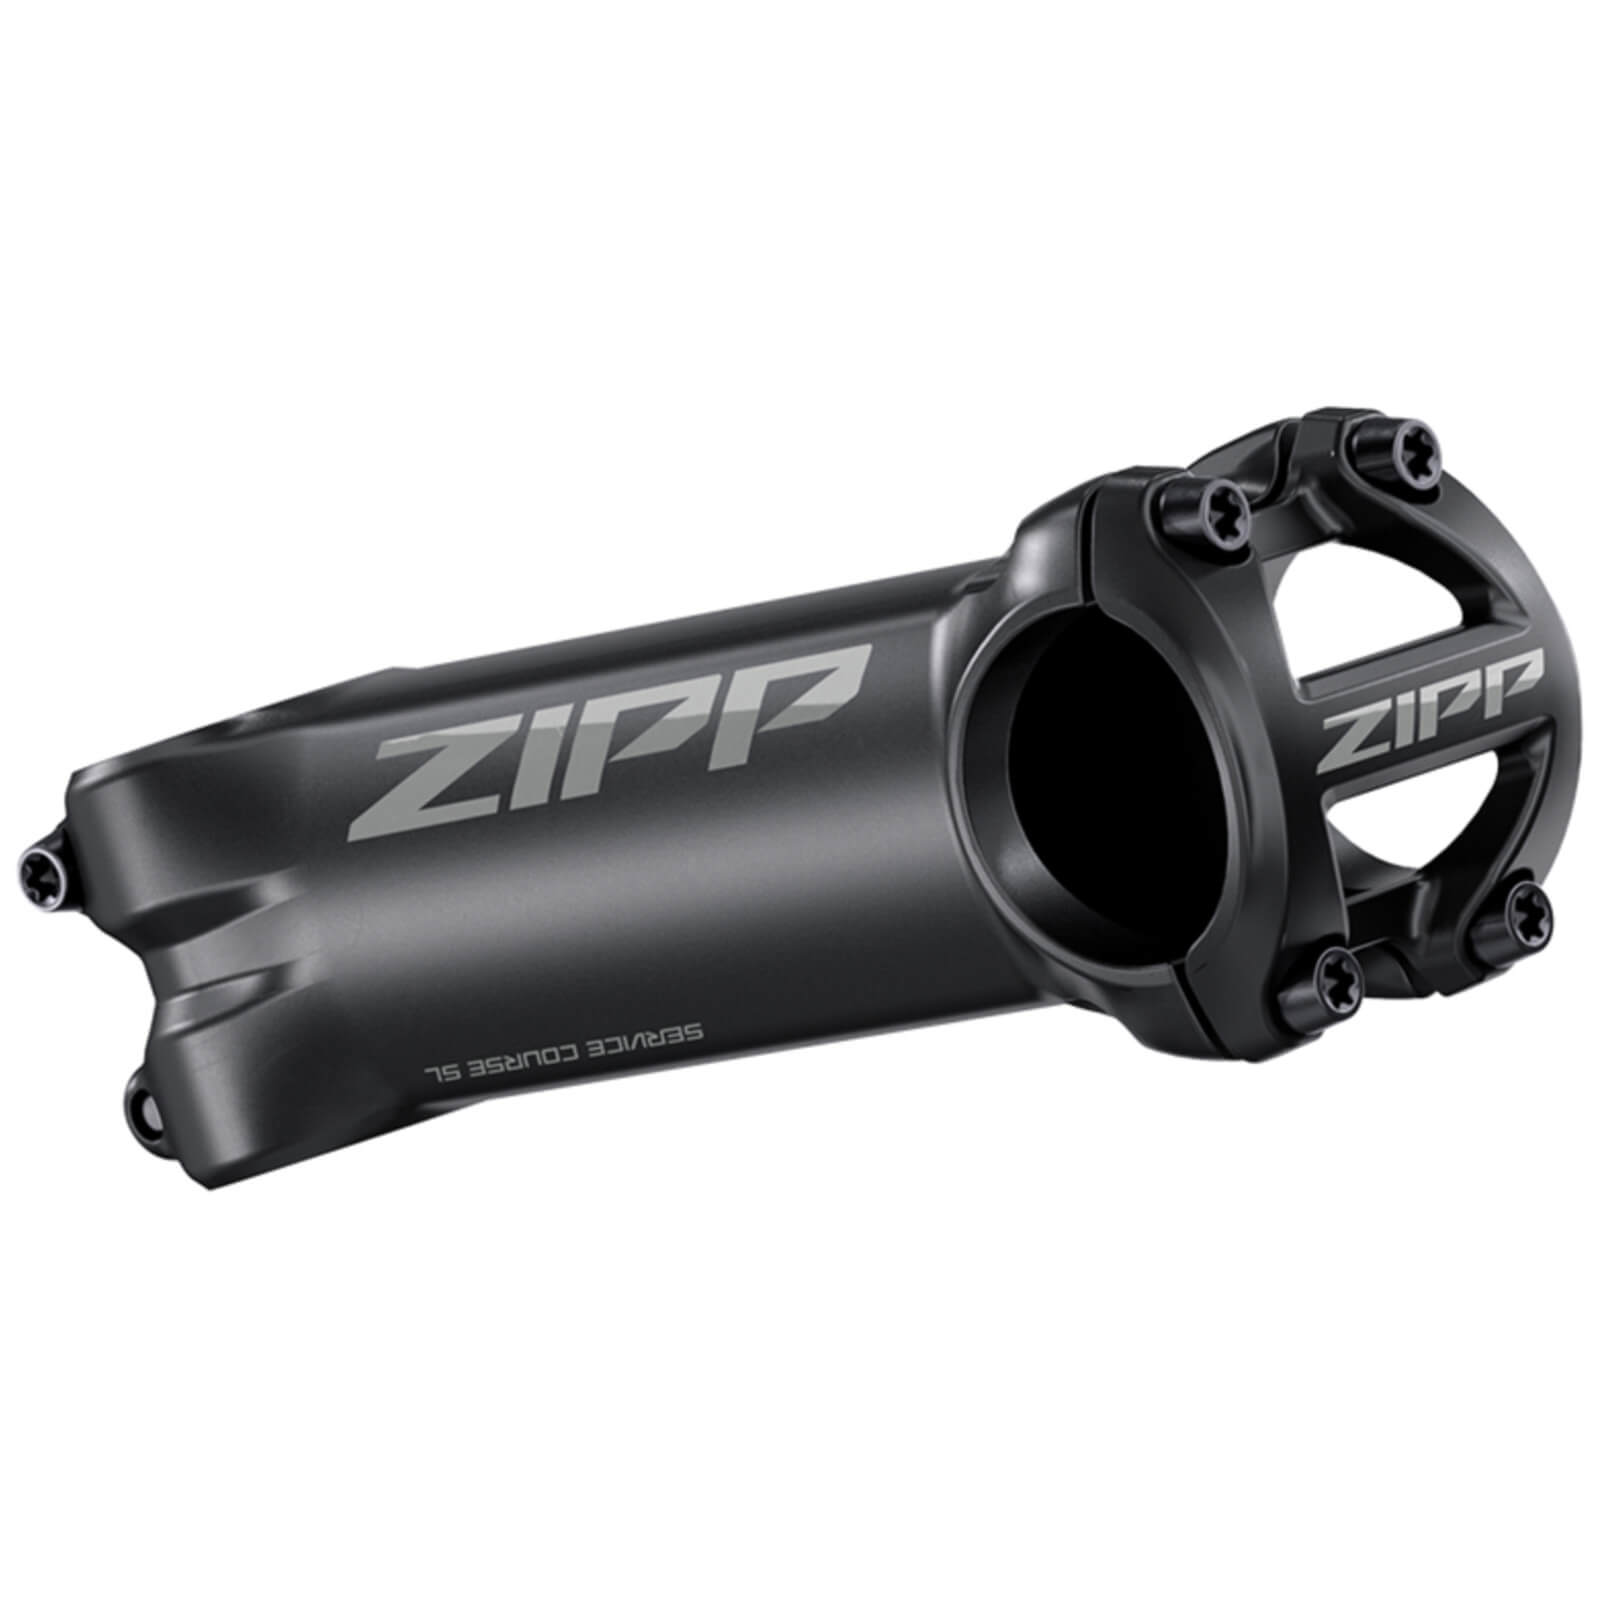 Zipp Service Course SL Stem - 90mm - 6 Degrees - Matte Black